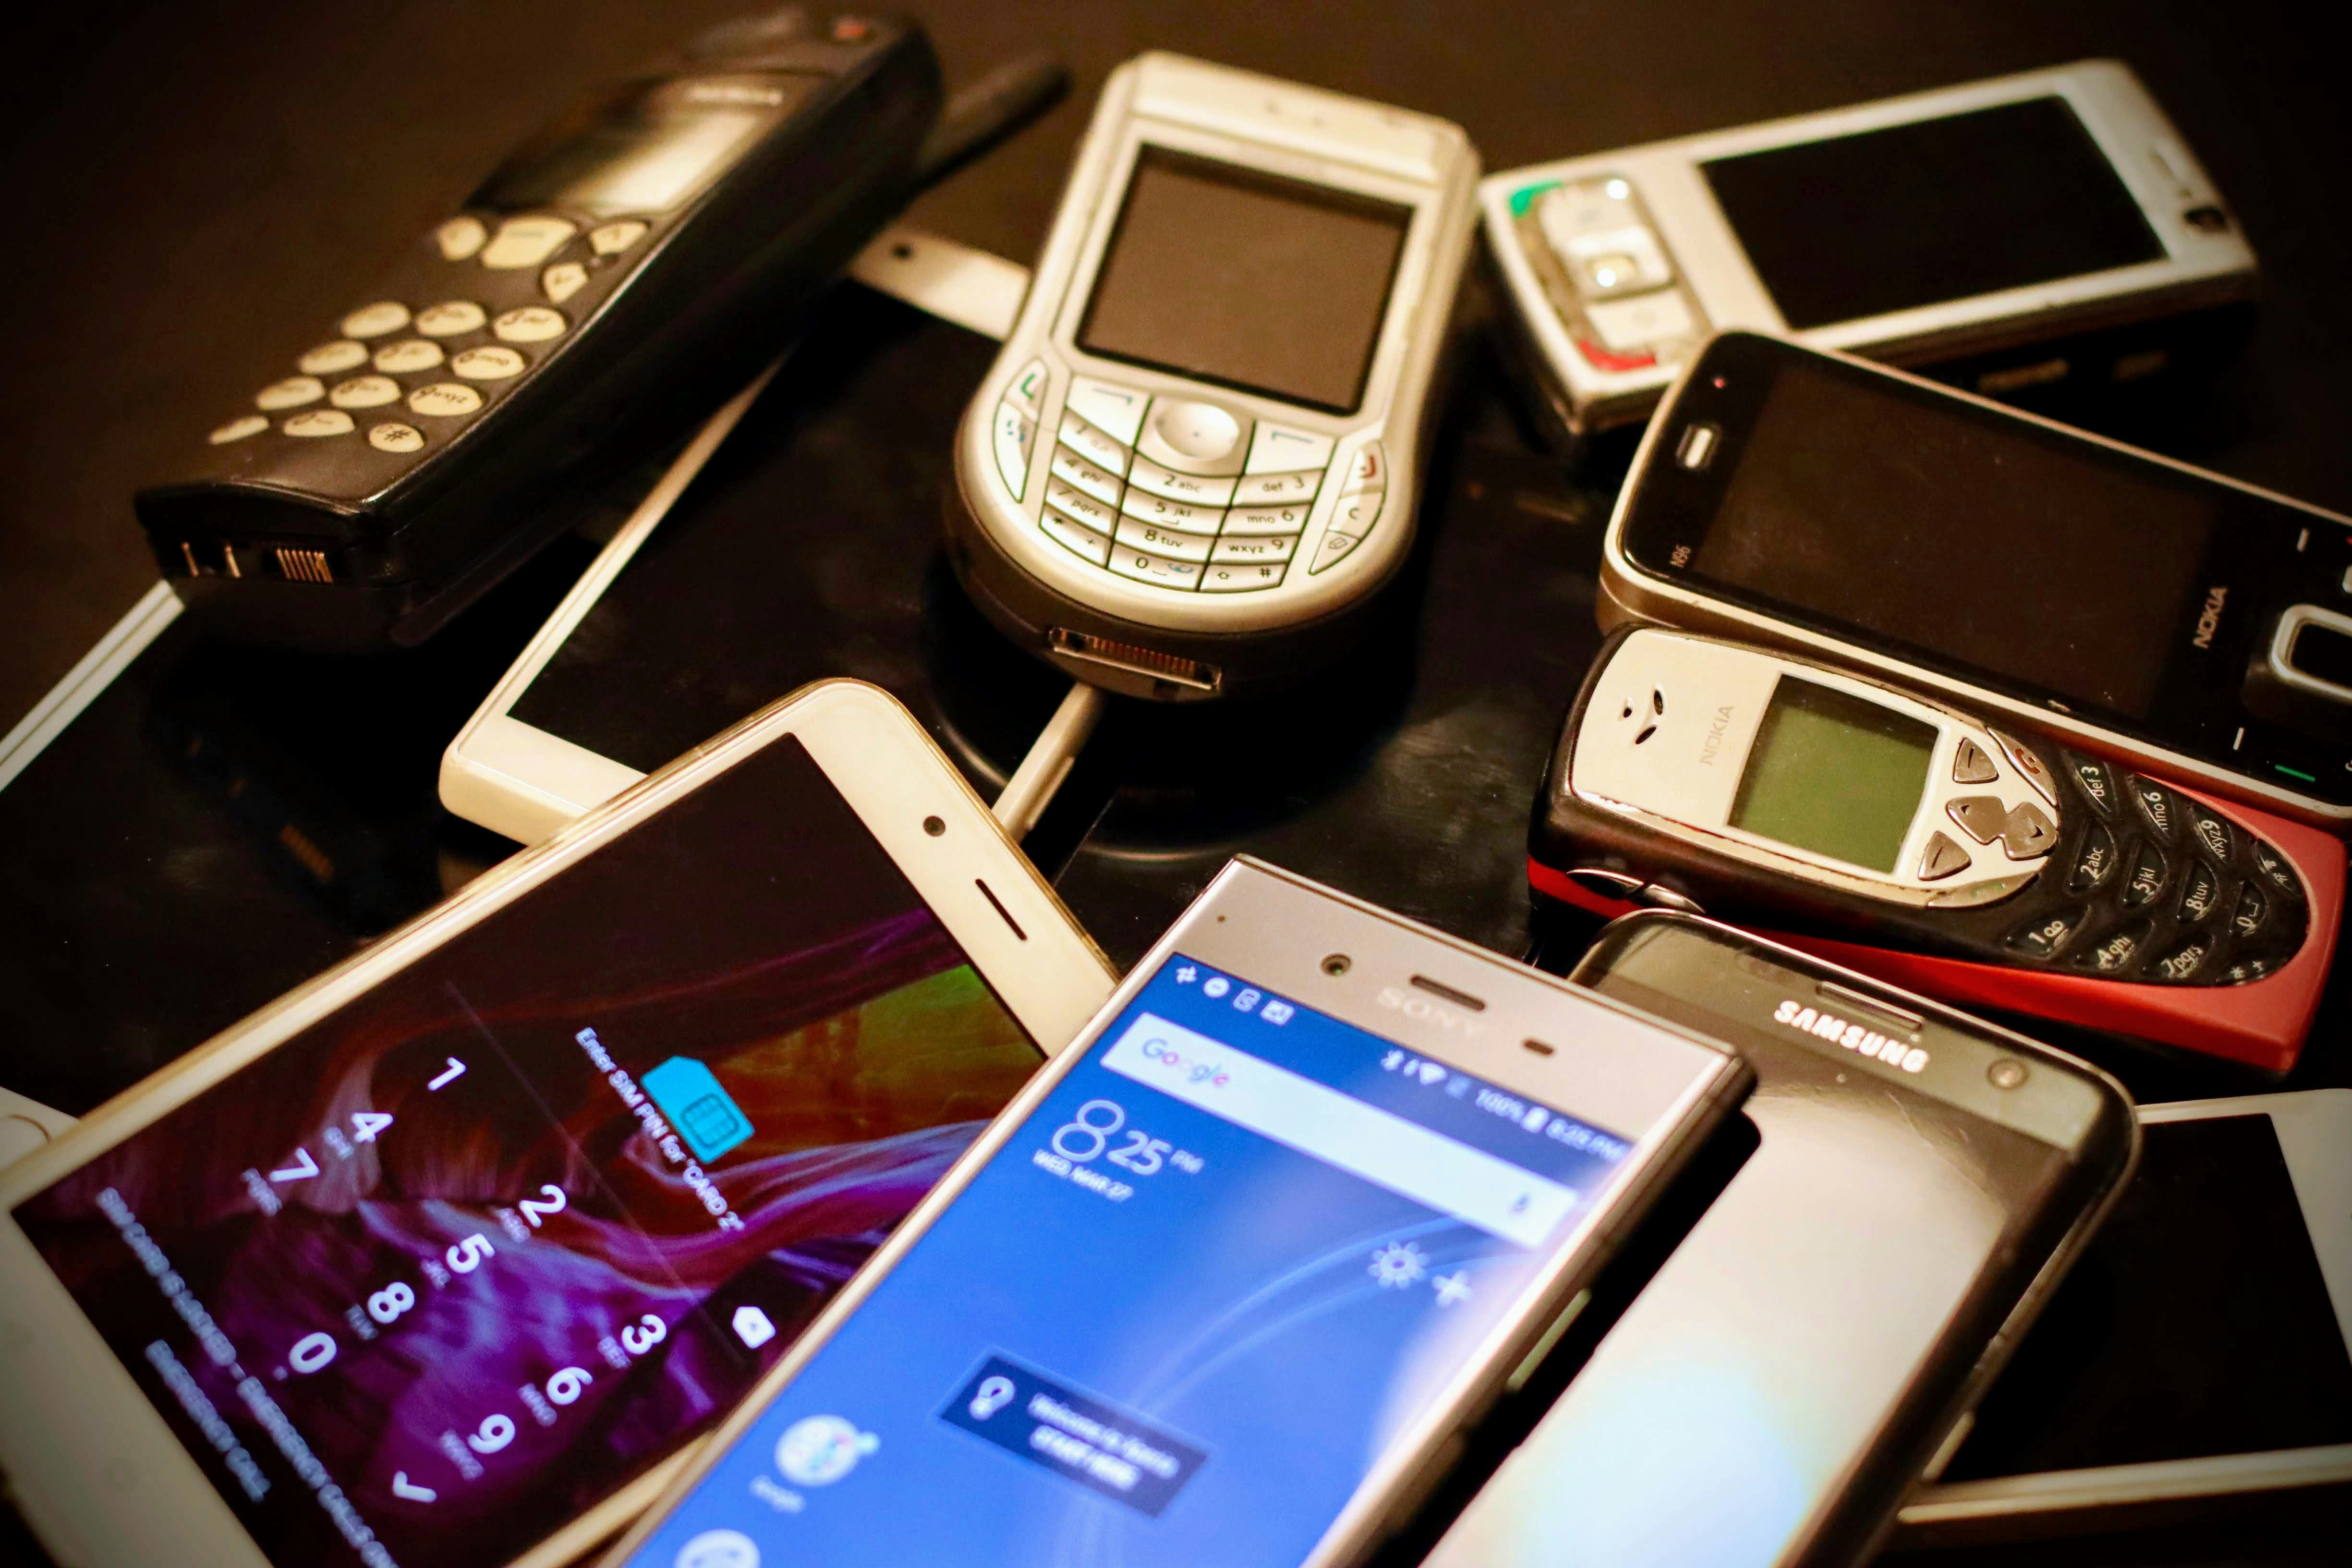 La rivoluzione tecnologica non è nata con gli iPhone: 3 telefoni dimenticati che hanno aperto la strada? - immagine news su imei.info